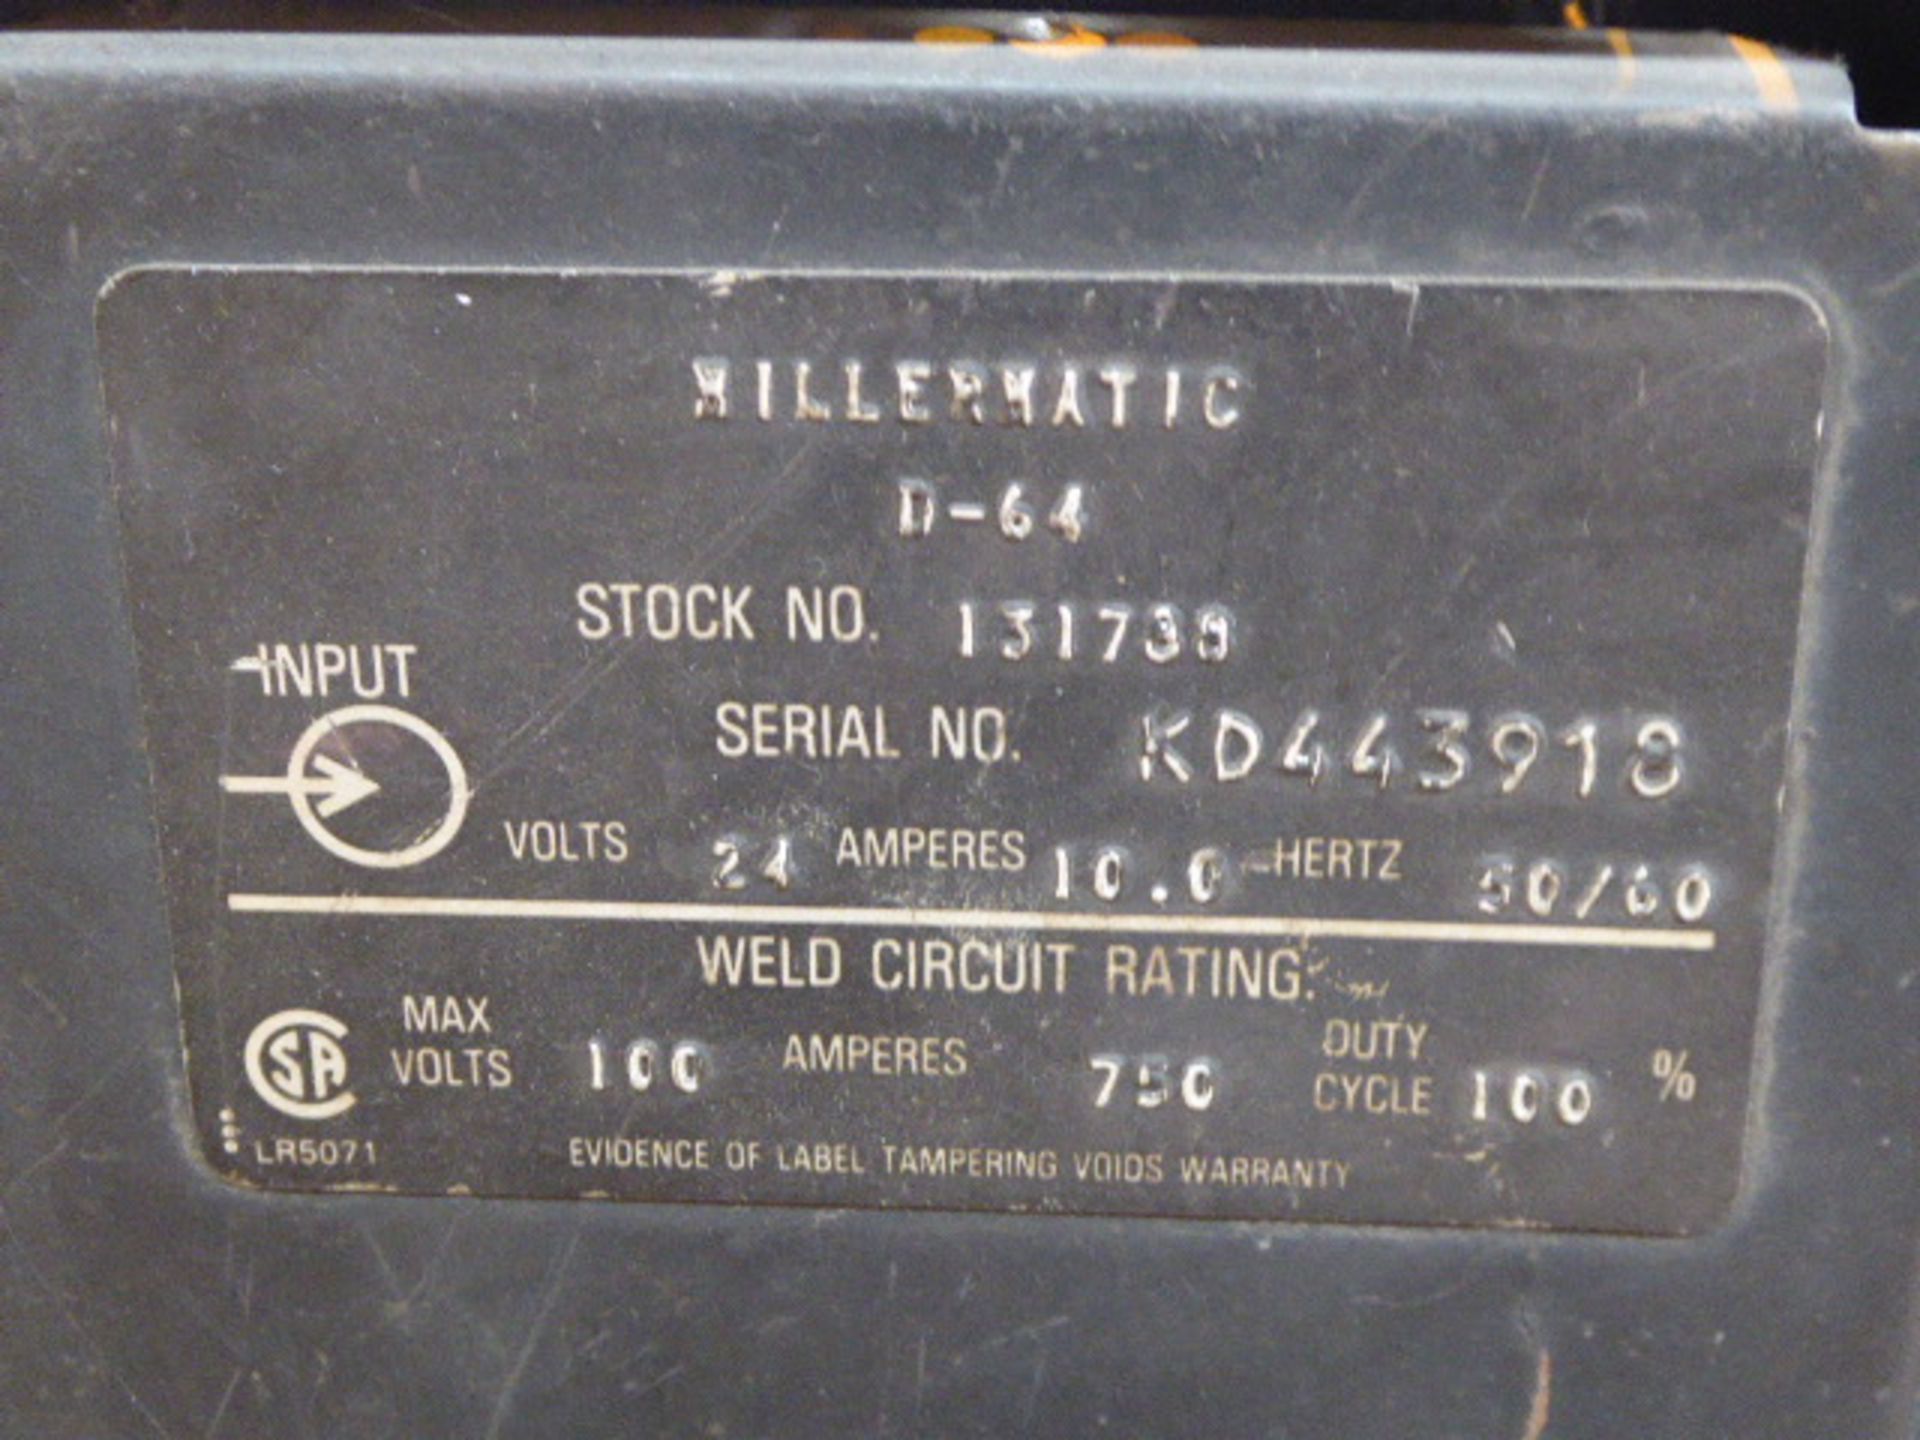 Miller Mig Welding Machine, m/n Deltaweld 450, s/n JG031959 w/Wire Feeder, s/n KD443910 - Image 4 of 4